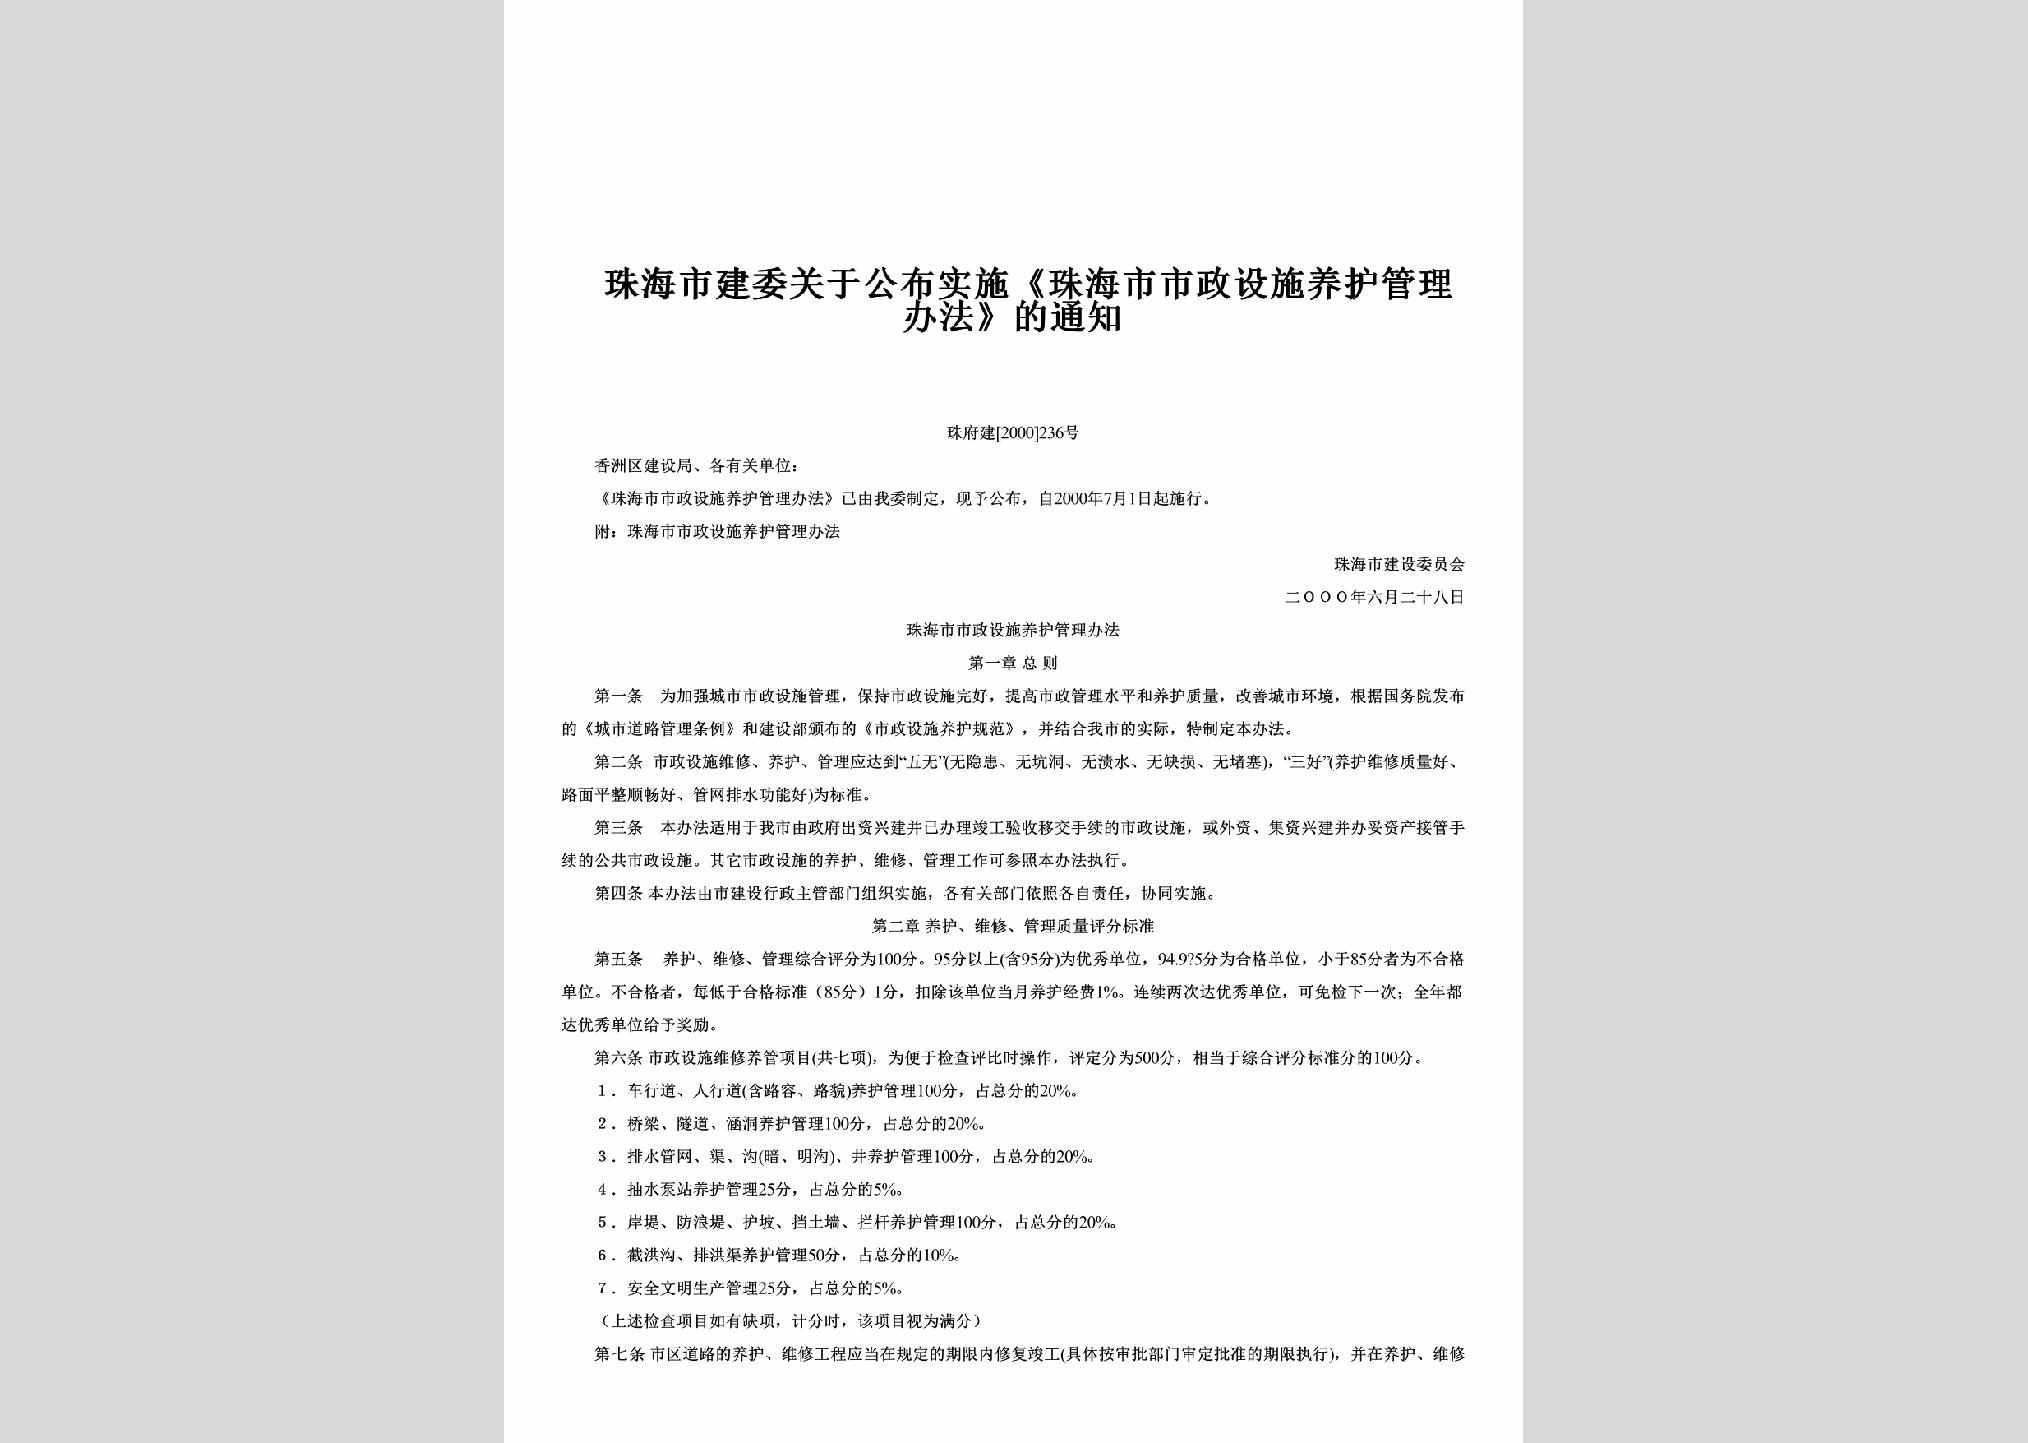 珠府建[2000]236号：关于公布实施《珠海市市政设施养护管理办法》的通知